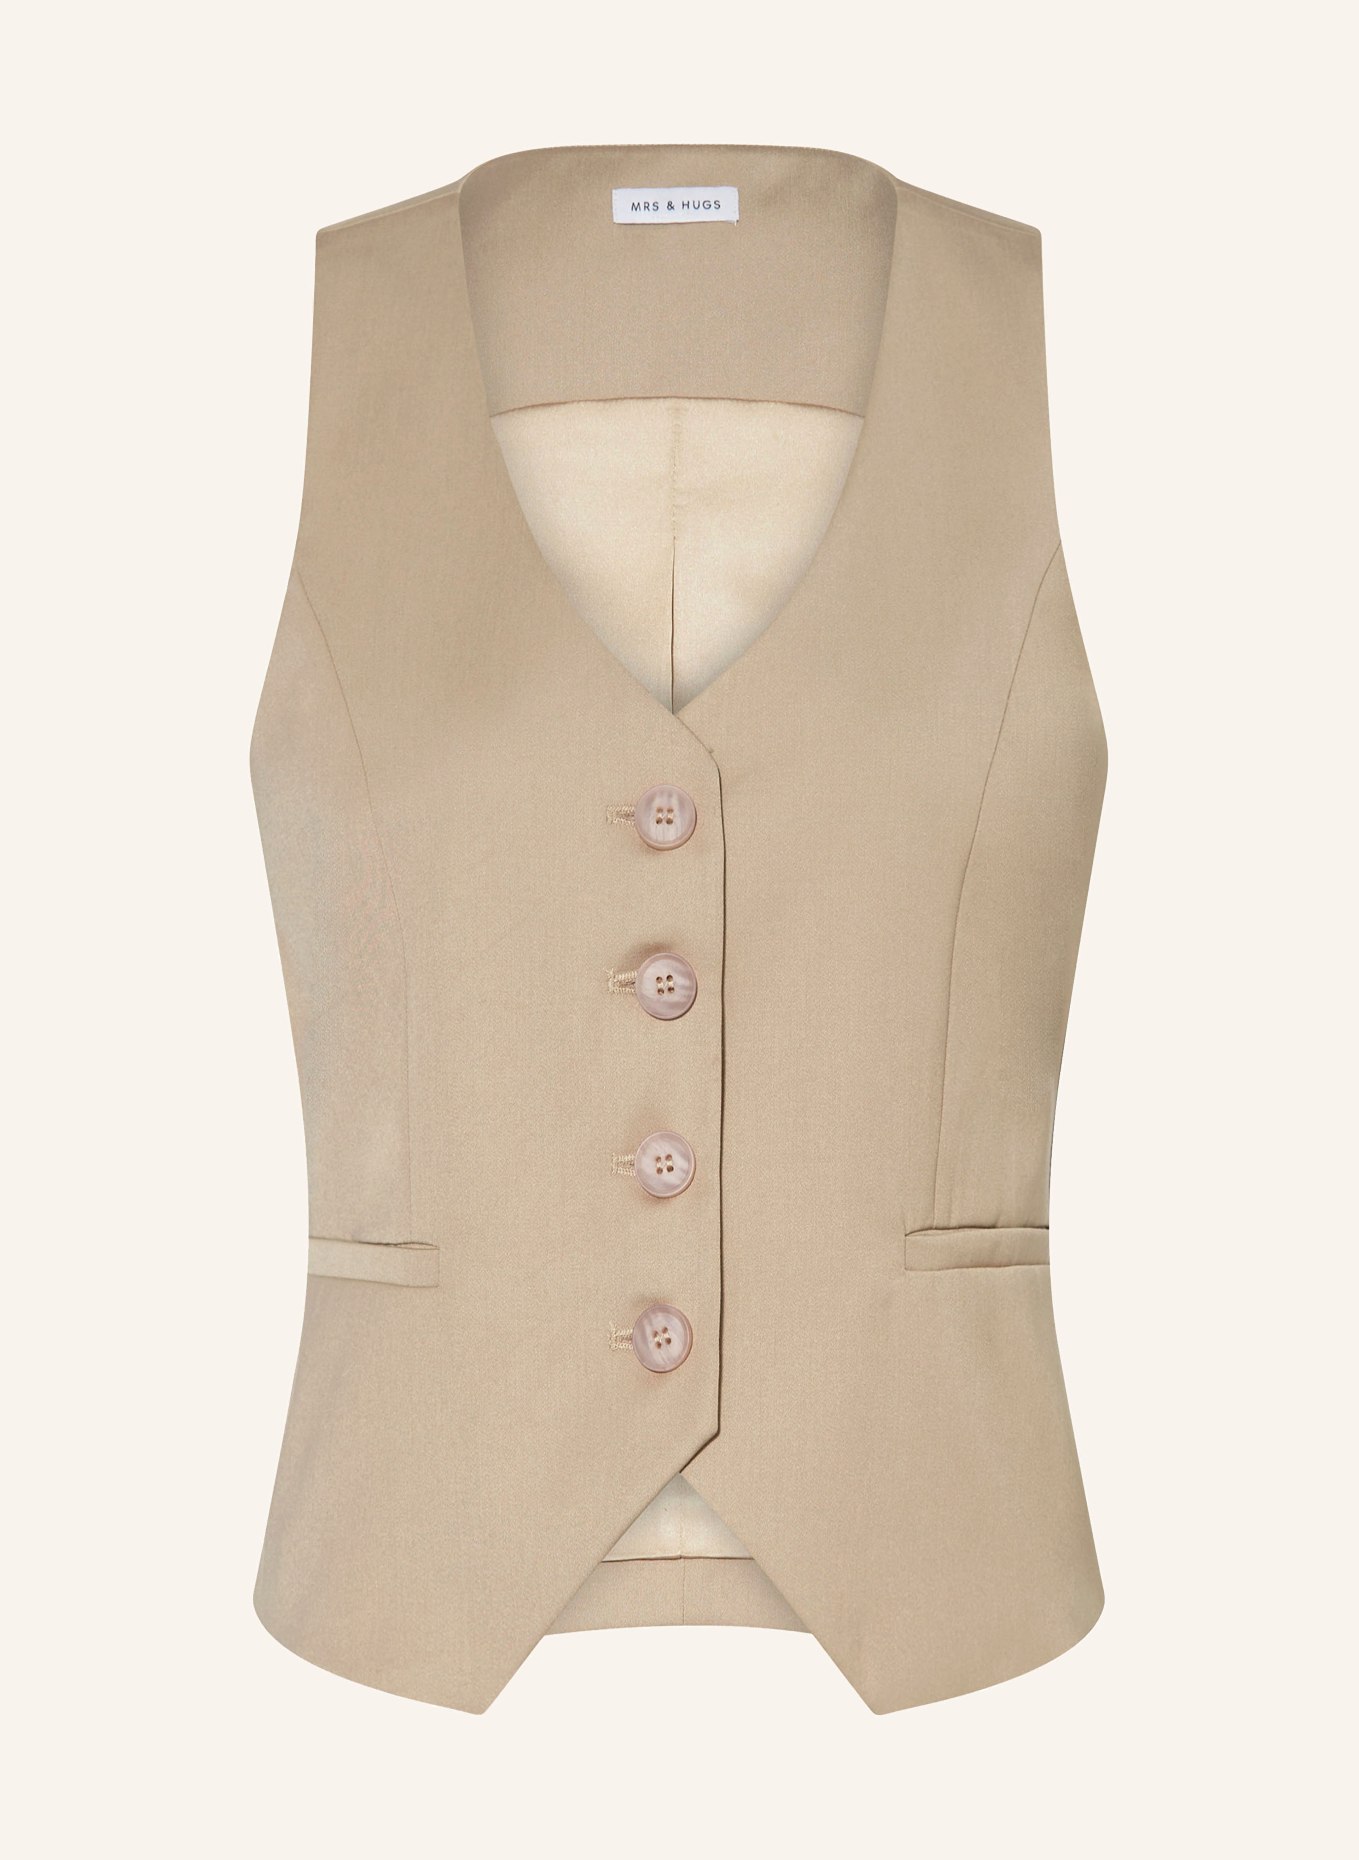 MRS & HUGS Blazer vest, Color: BEIGE (Image 1)